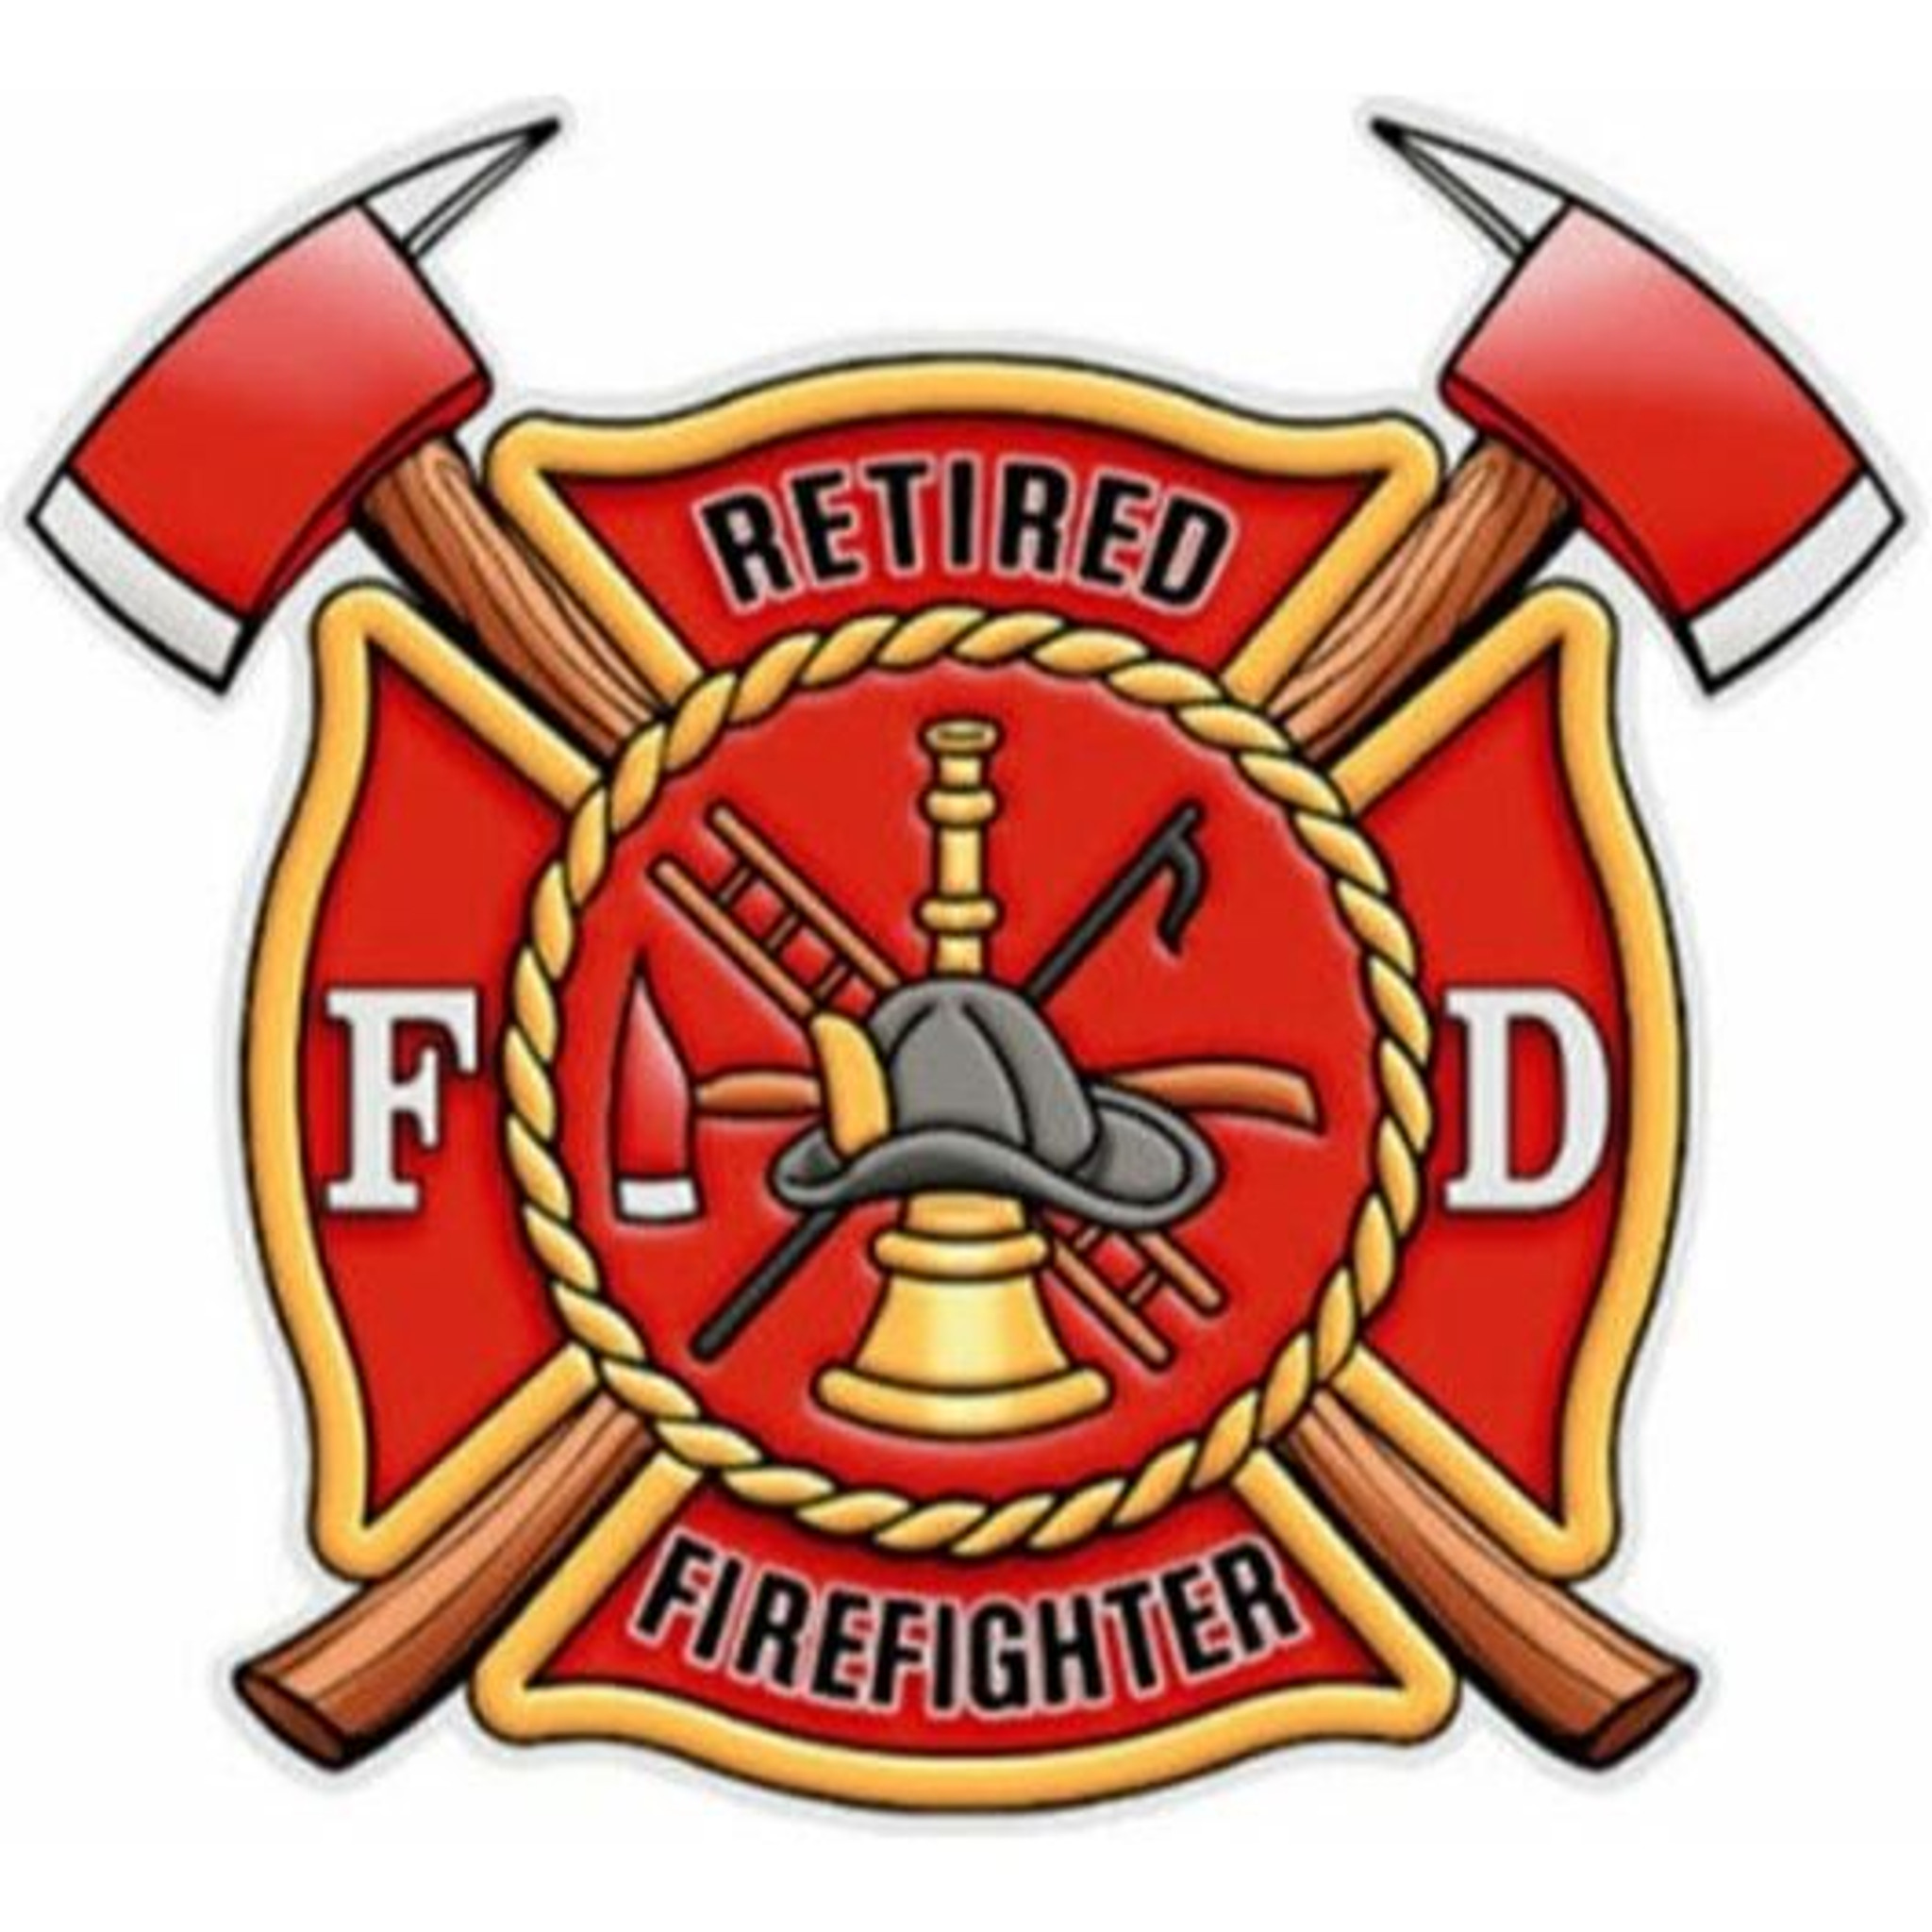 Decal - Retired Firefighter (window size) - Firestoreonline